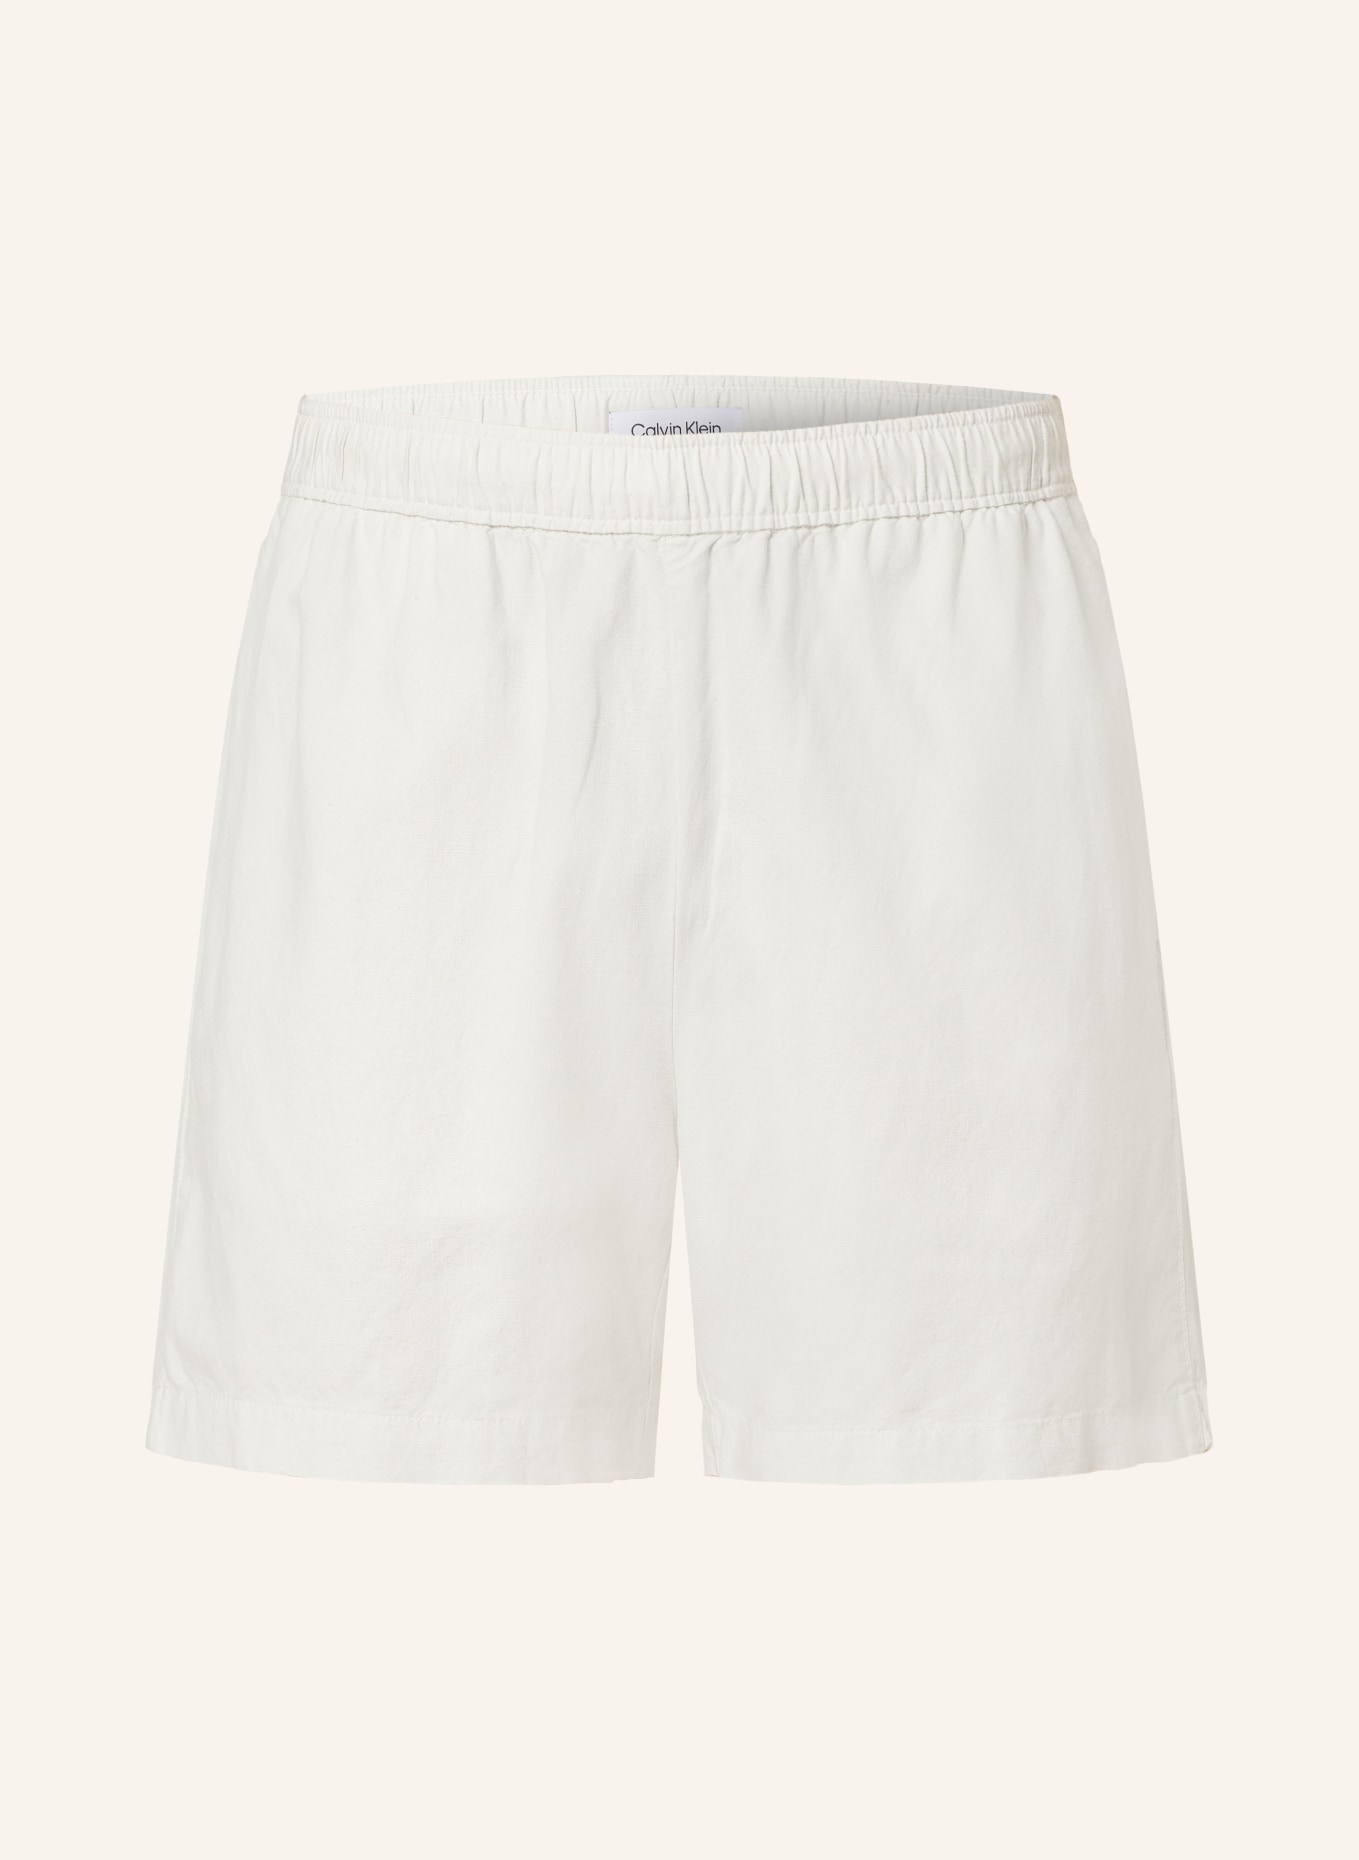 Calvin Klein Linen shorts, Color: CREAM (Image 1)